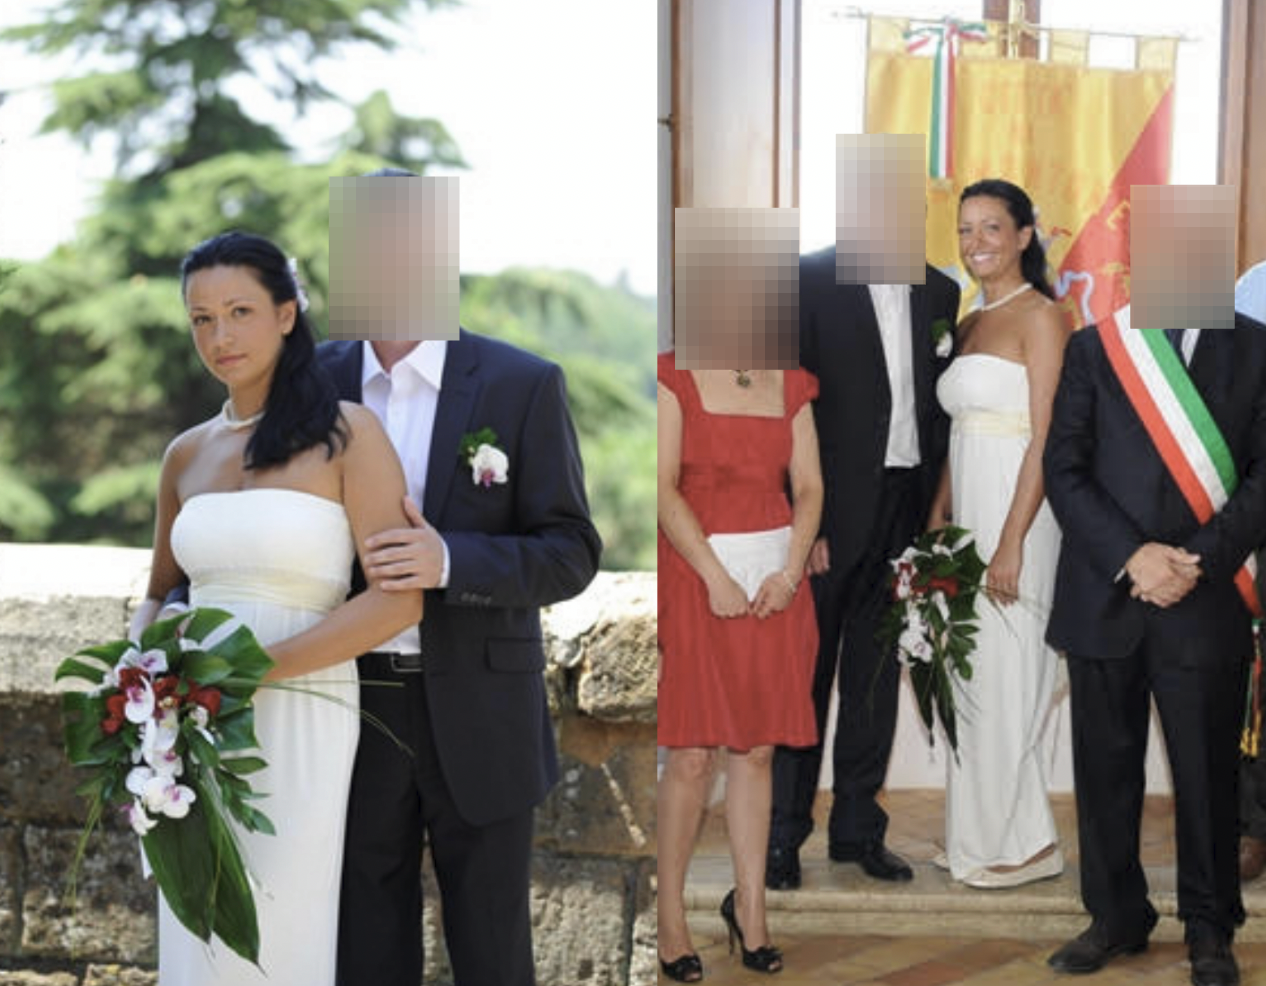 El casamiento de María Adela con un joven de origen ecuatoriano. Supuestamente era otro espía ruso. A la fiesta asistió toda la alta sociedad de Nápoles. (Facebook)